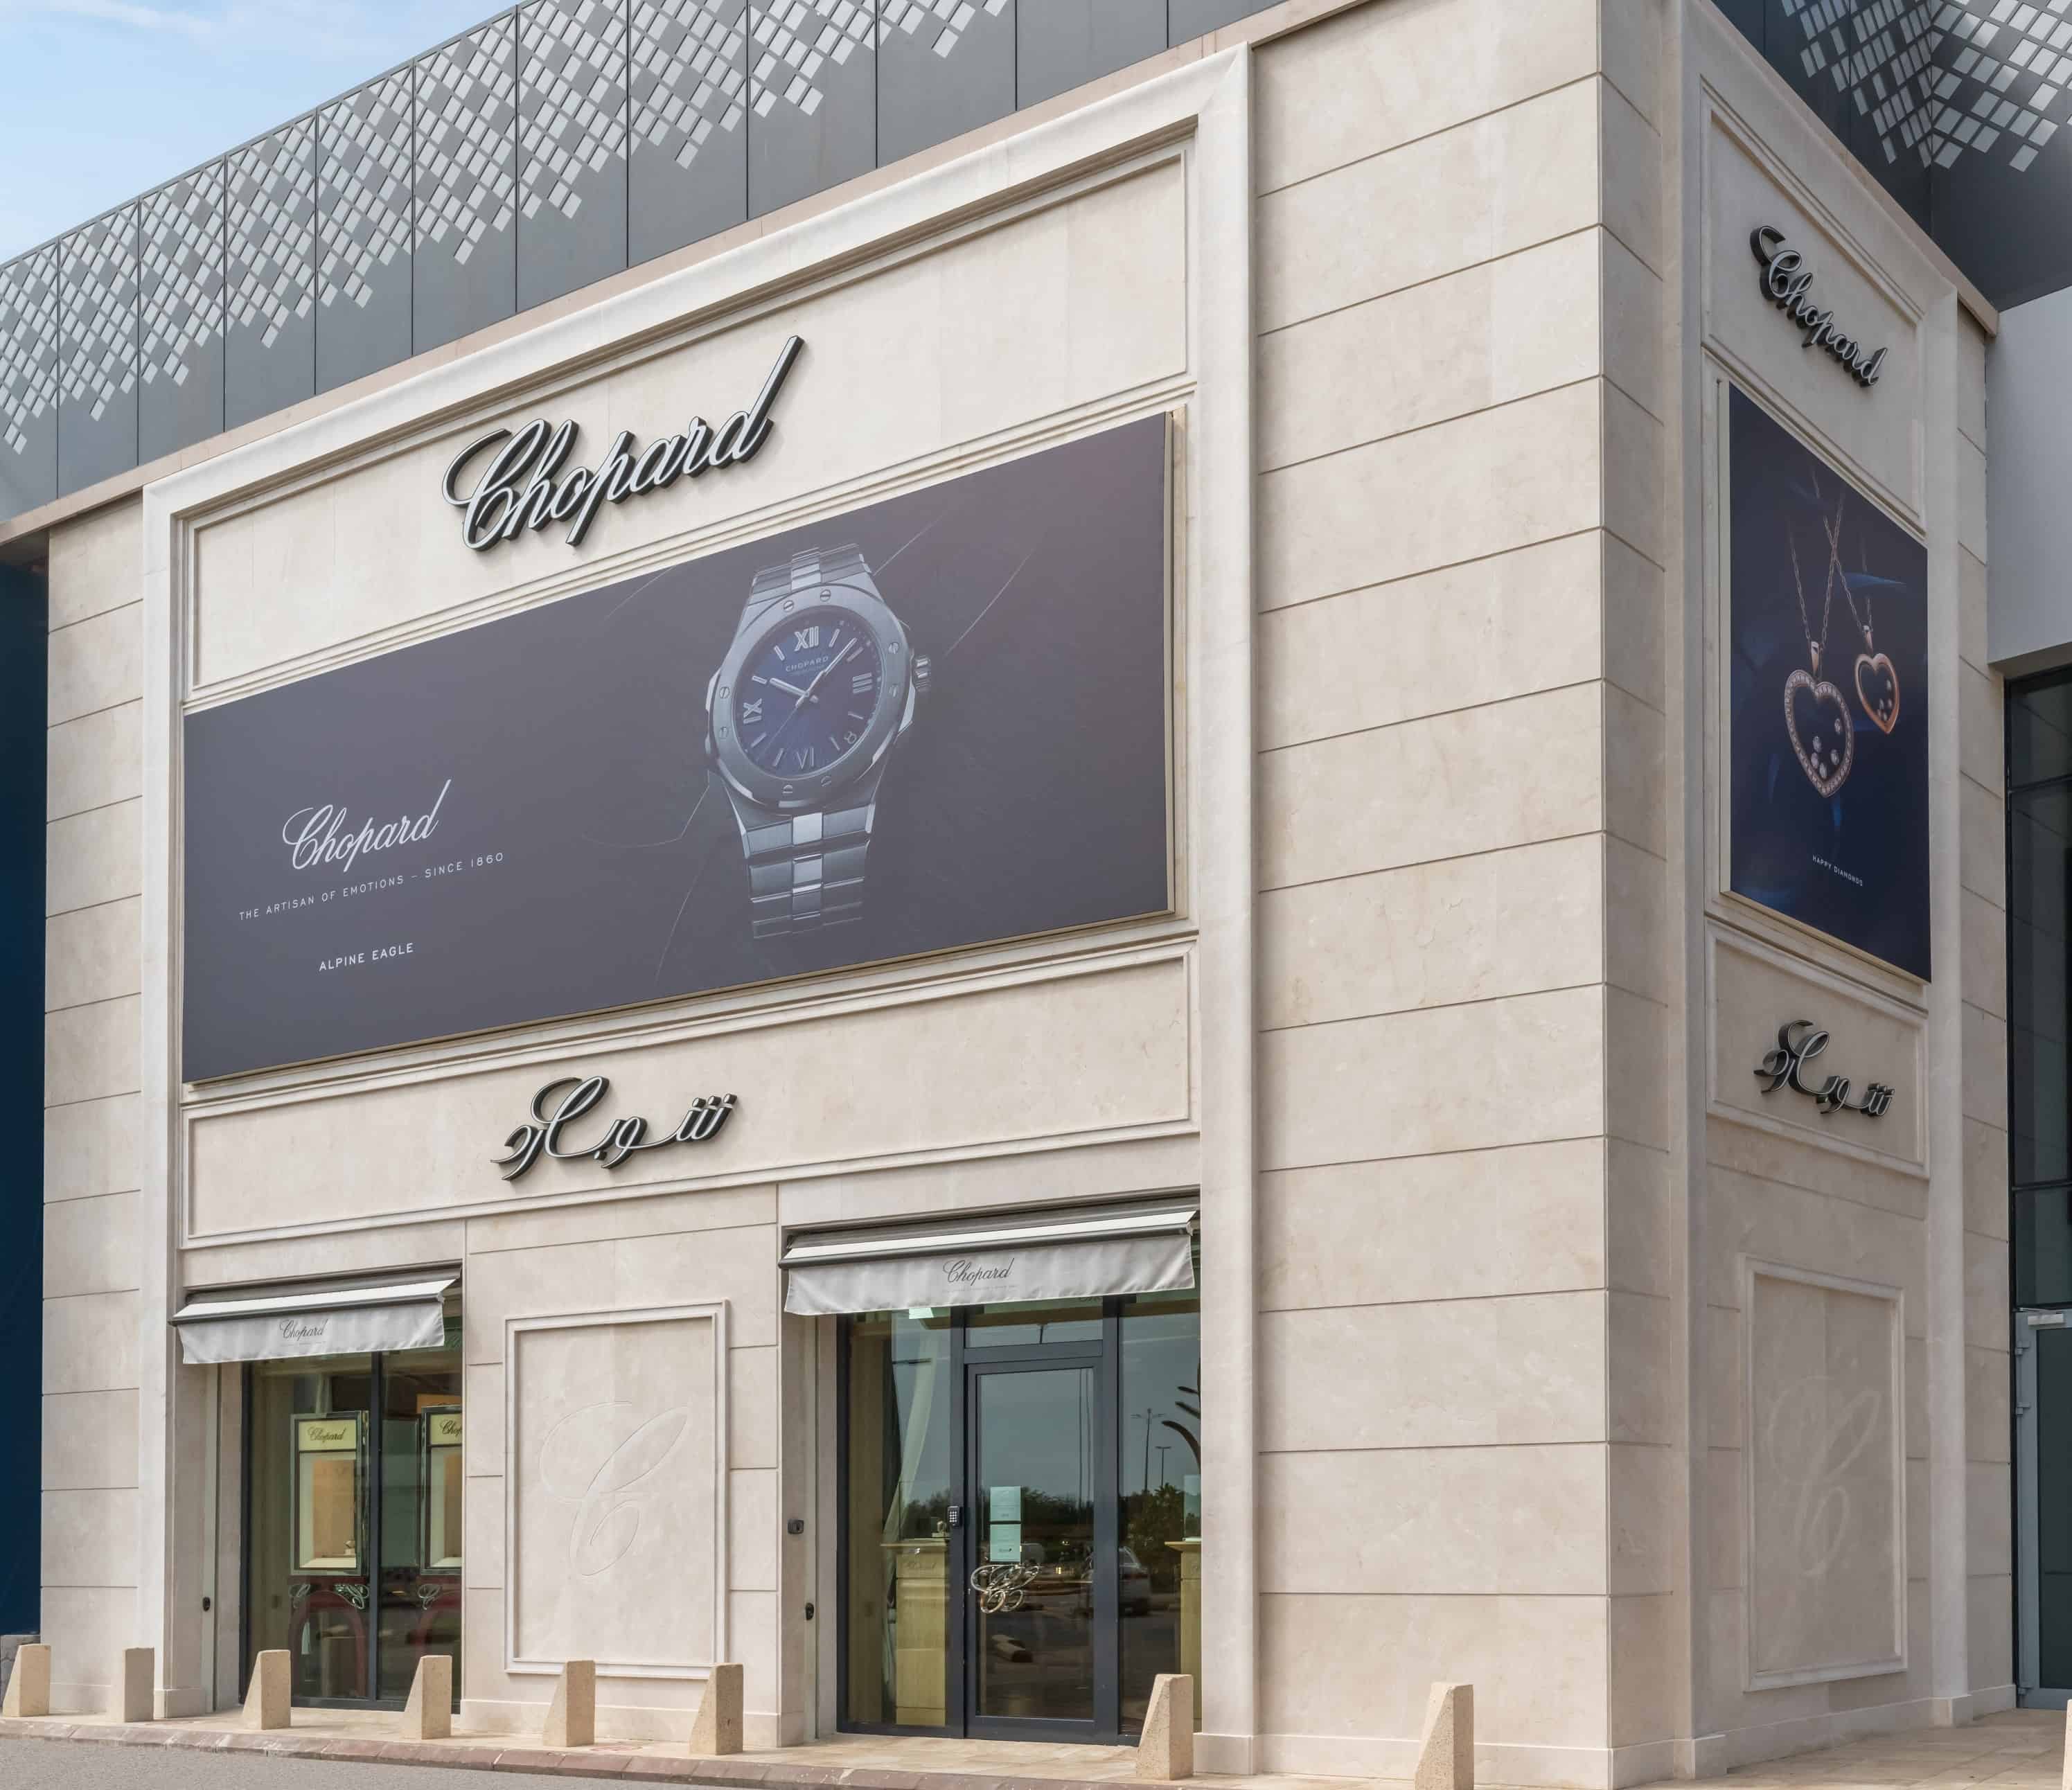 Σε συνεργασία με την United Attar Company, η Chopard ανοίγει νέο εκθεσιακό χώρο στο Al-Basateen Center στο Βασίλειο της Σαουδικής Αραβίας